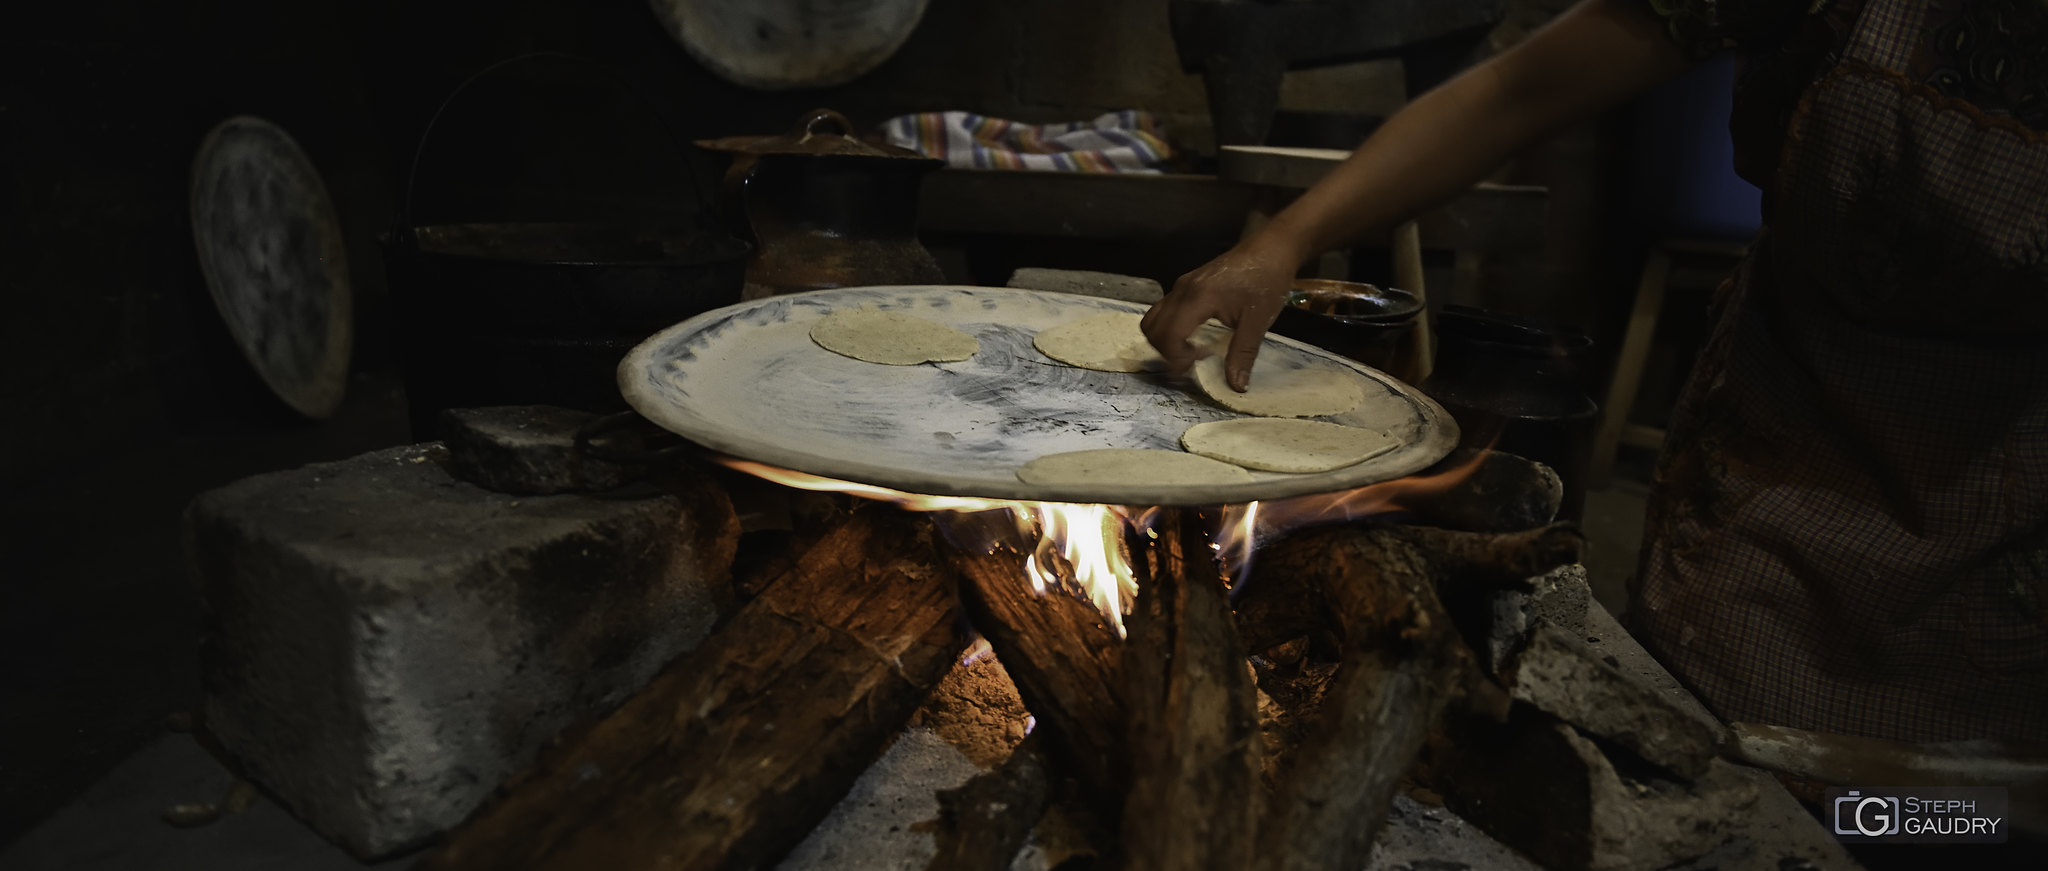 Tacos mexicanos - cocinar a fuego de leña